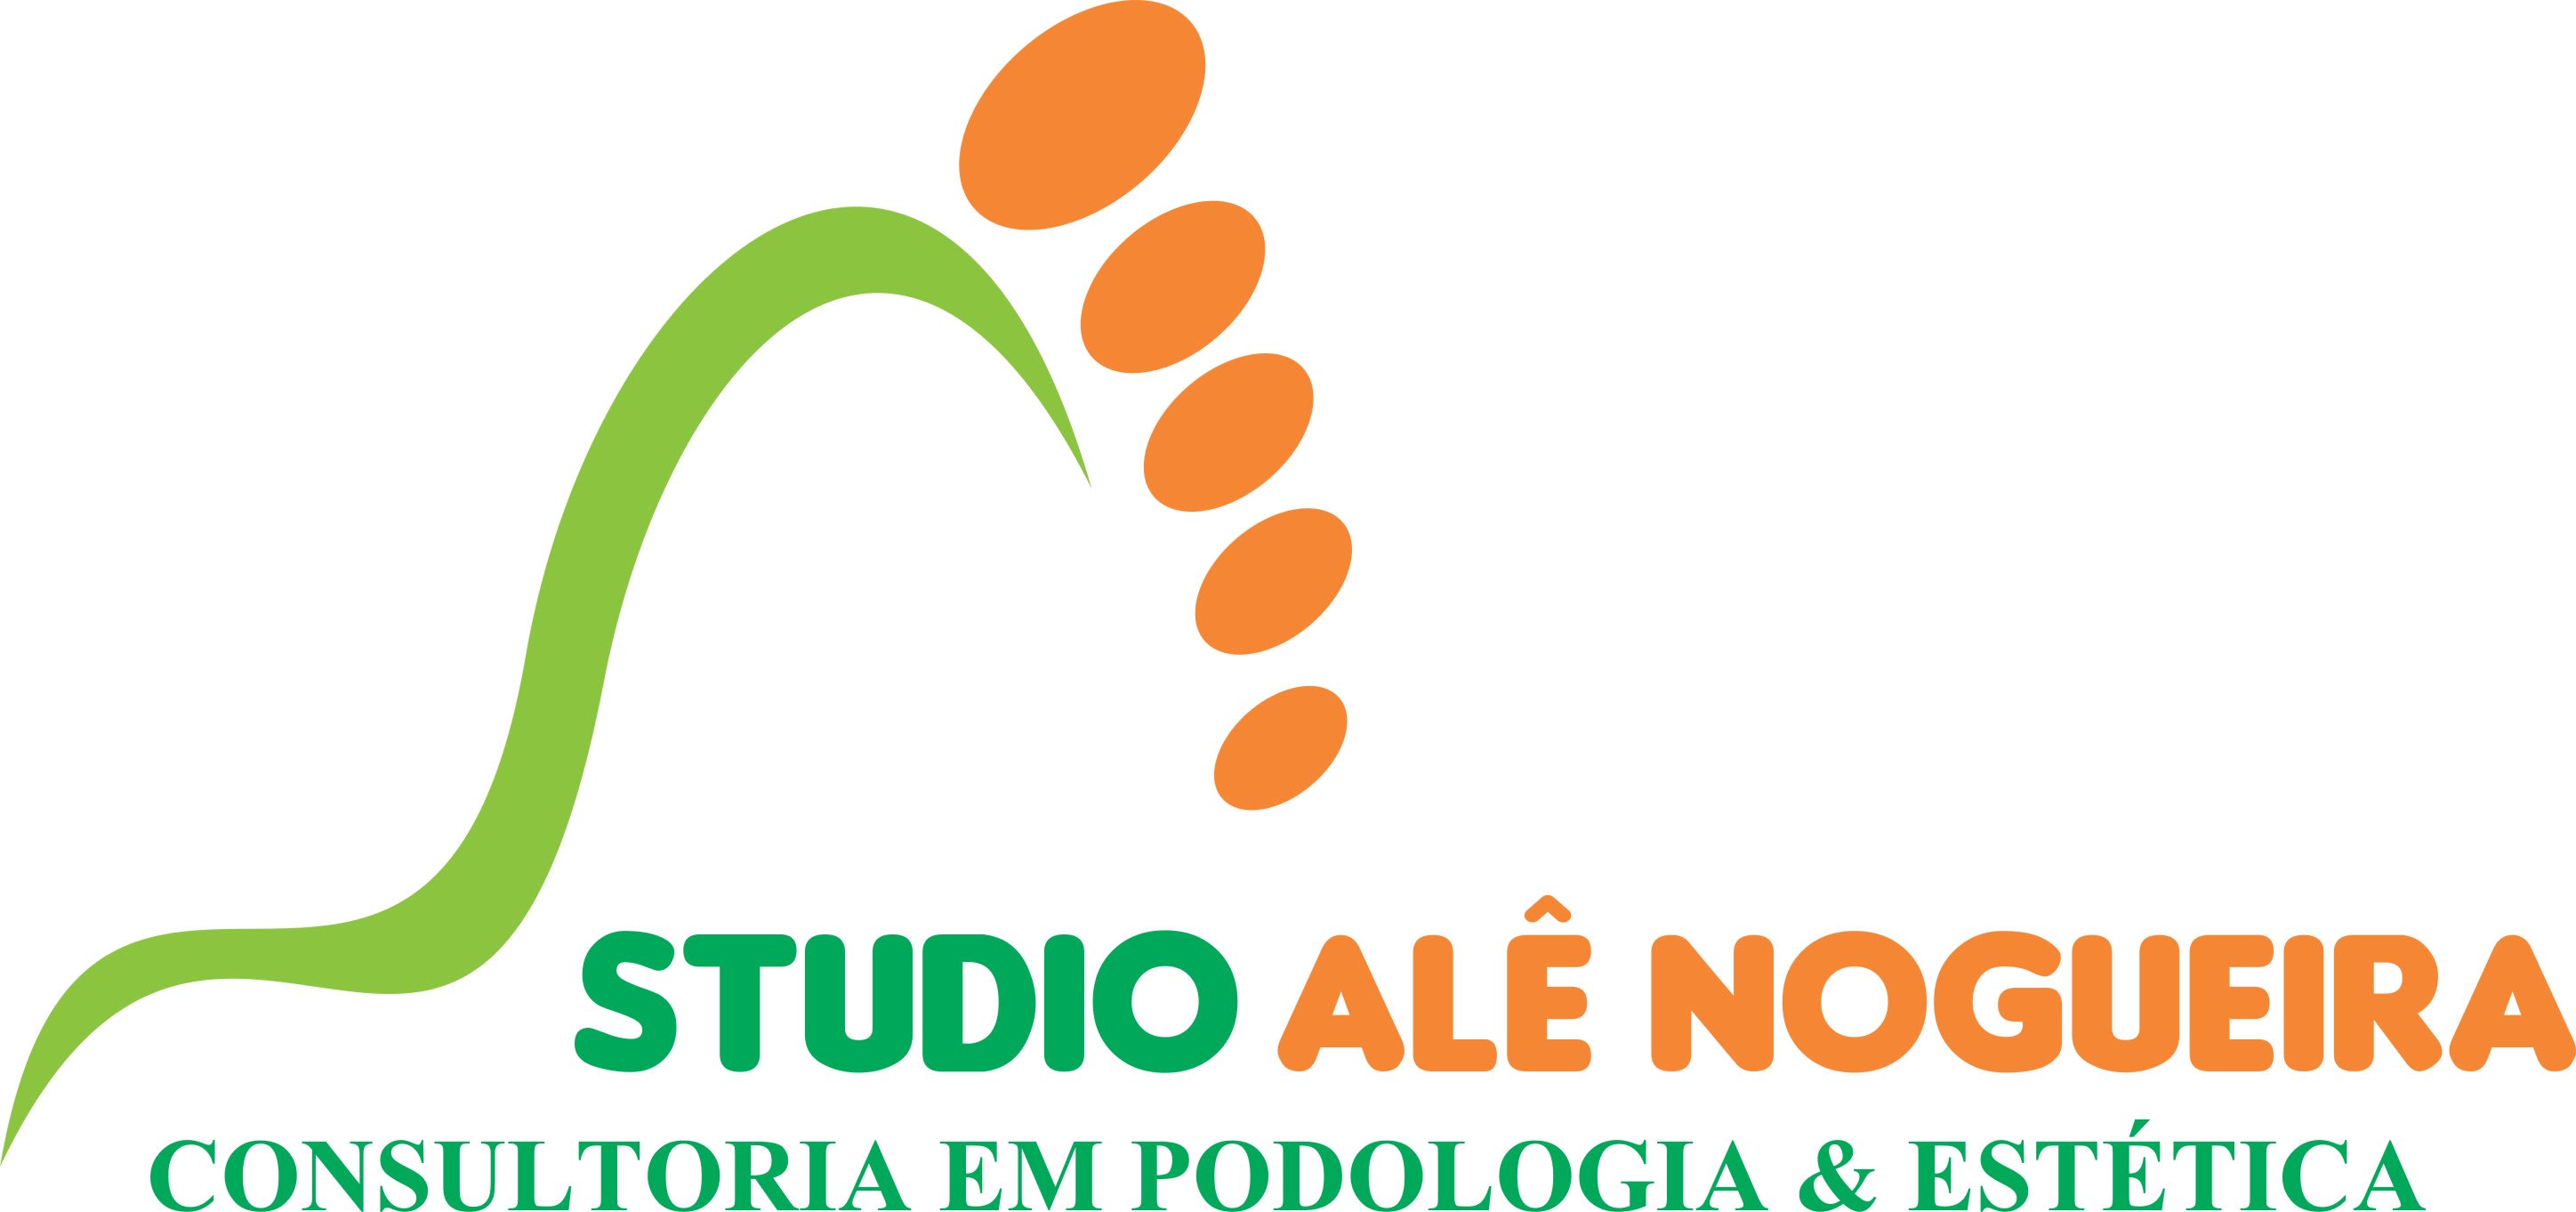 Consultoria Alê Nogueira